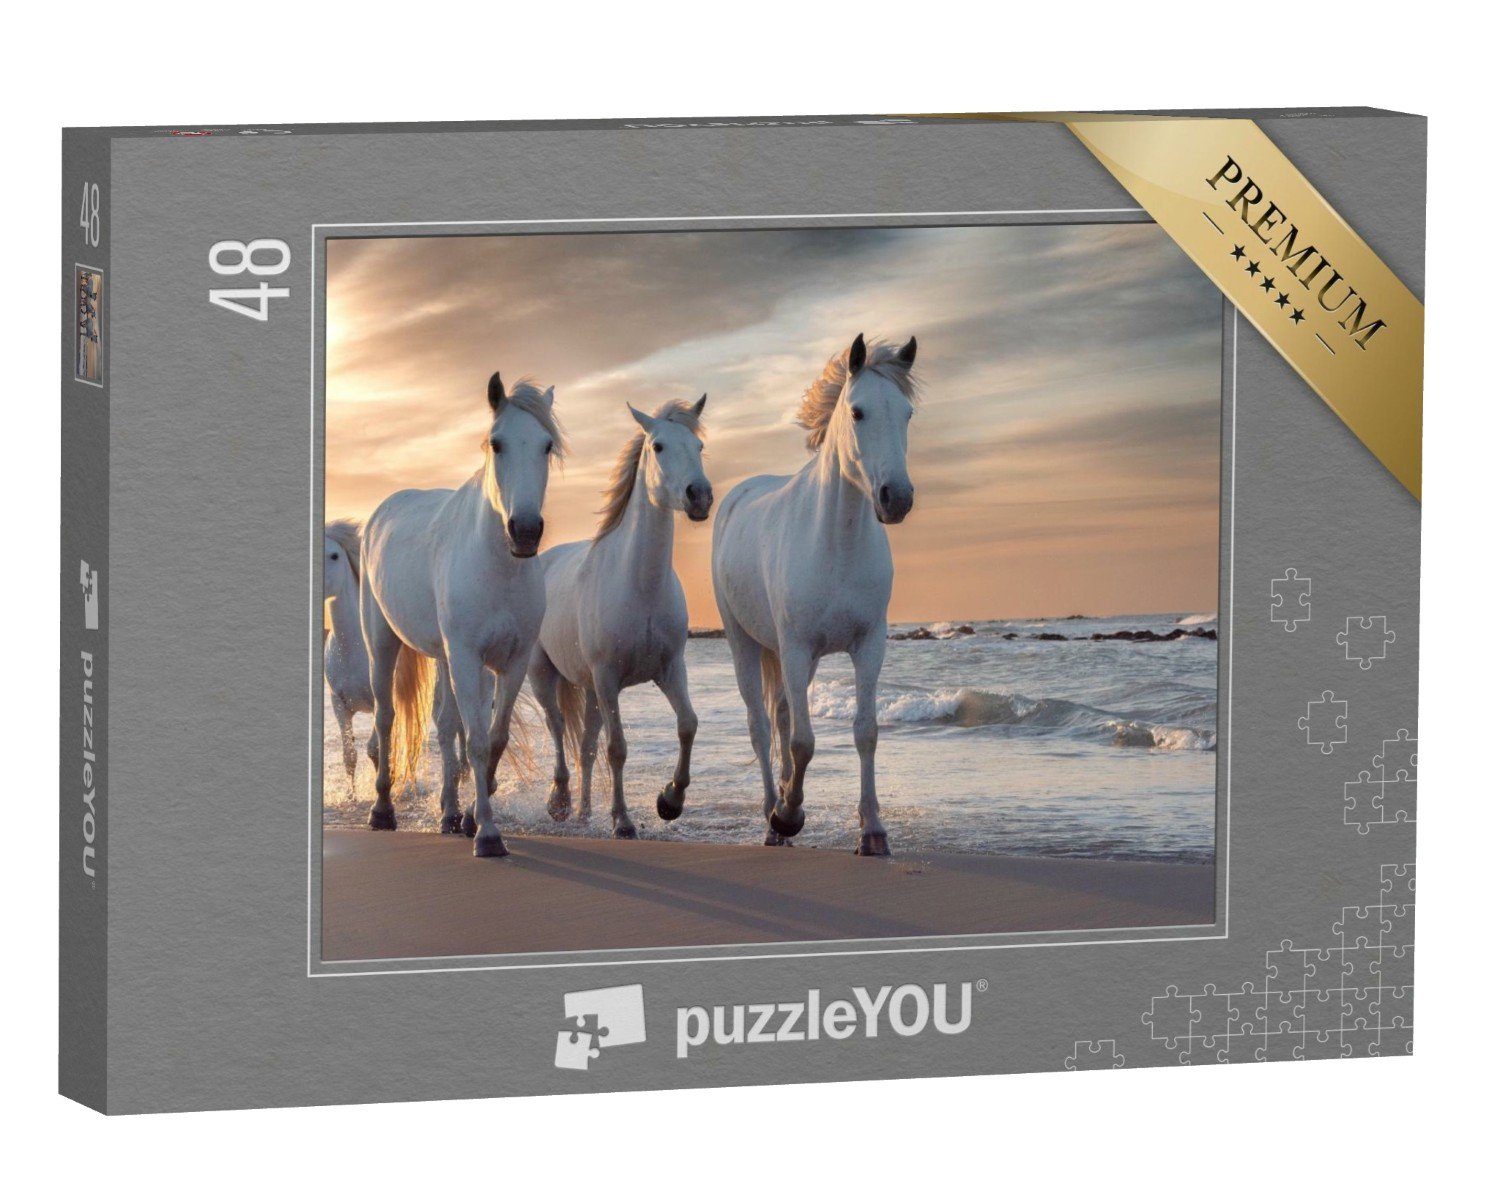 puzzleYOU Puzzle Die weißen Pferde der Camargue, Frankreich, 48 Puzzleteile, puzzleYOU-Kollektionen Tiere, 48 Teile, Schwierig, 100 Teile